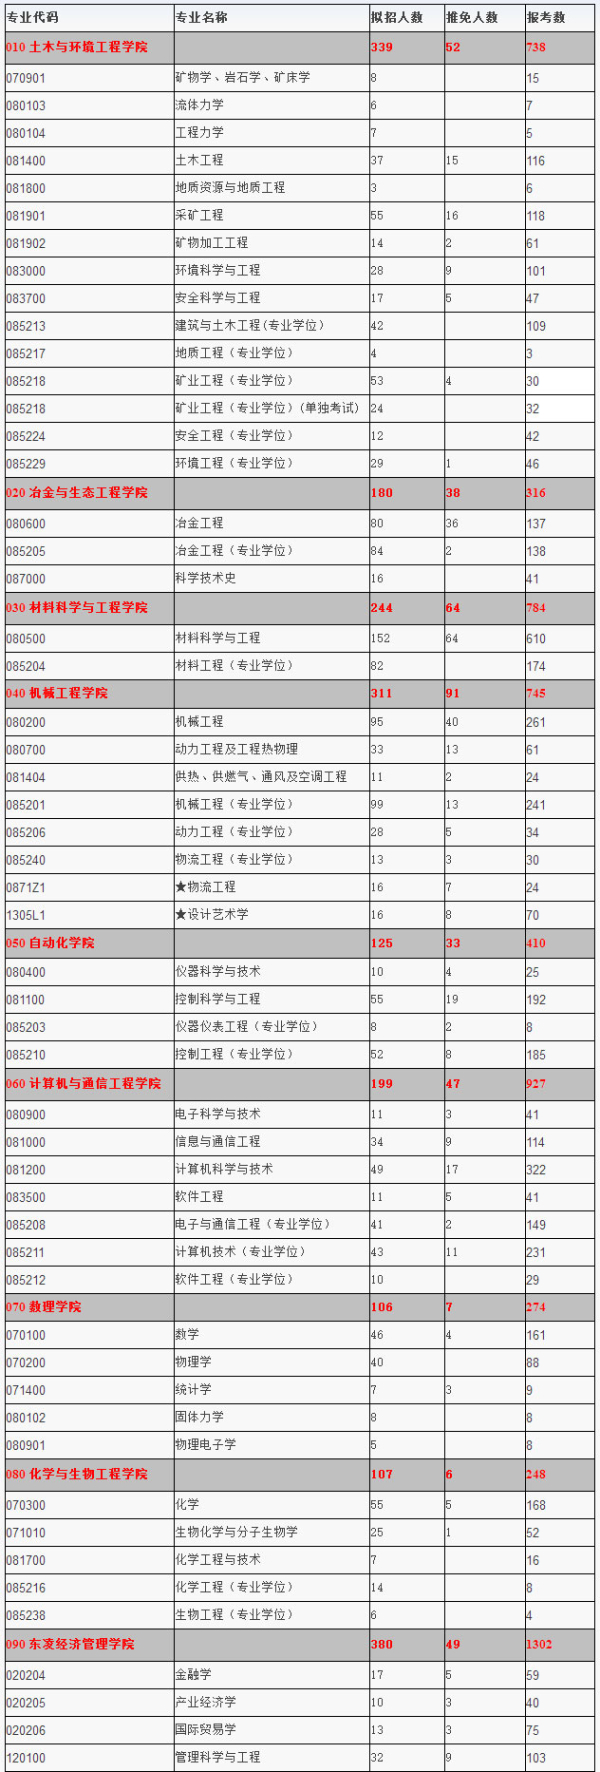 北京科技大学2015年硕士研究生招生考试报名情况统计1